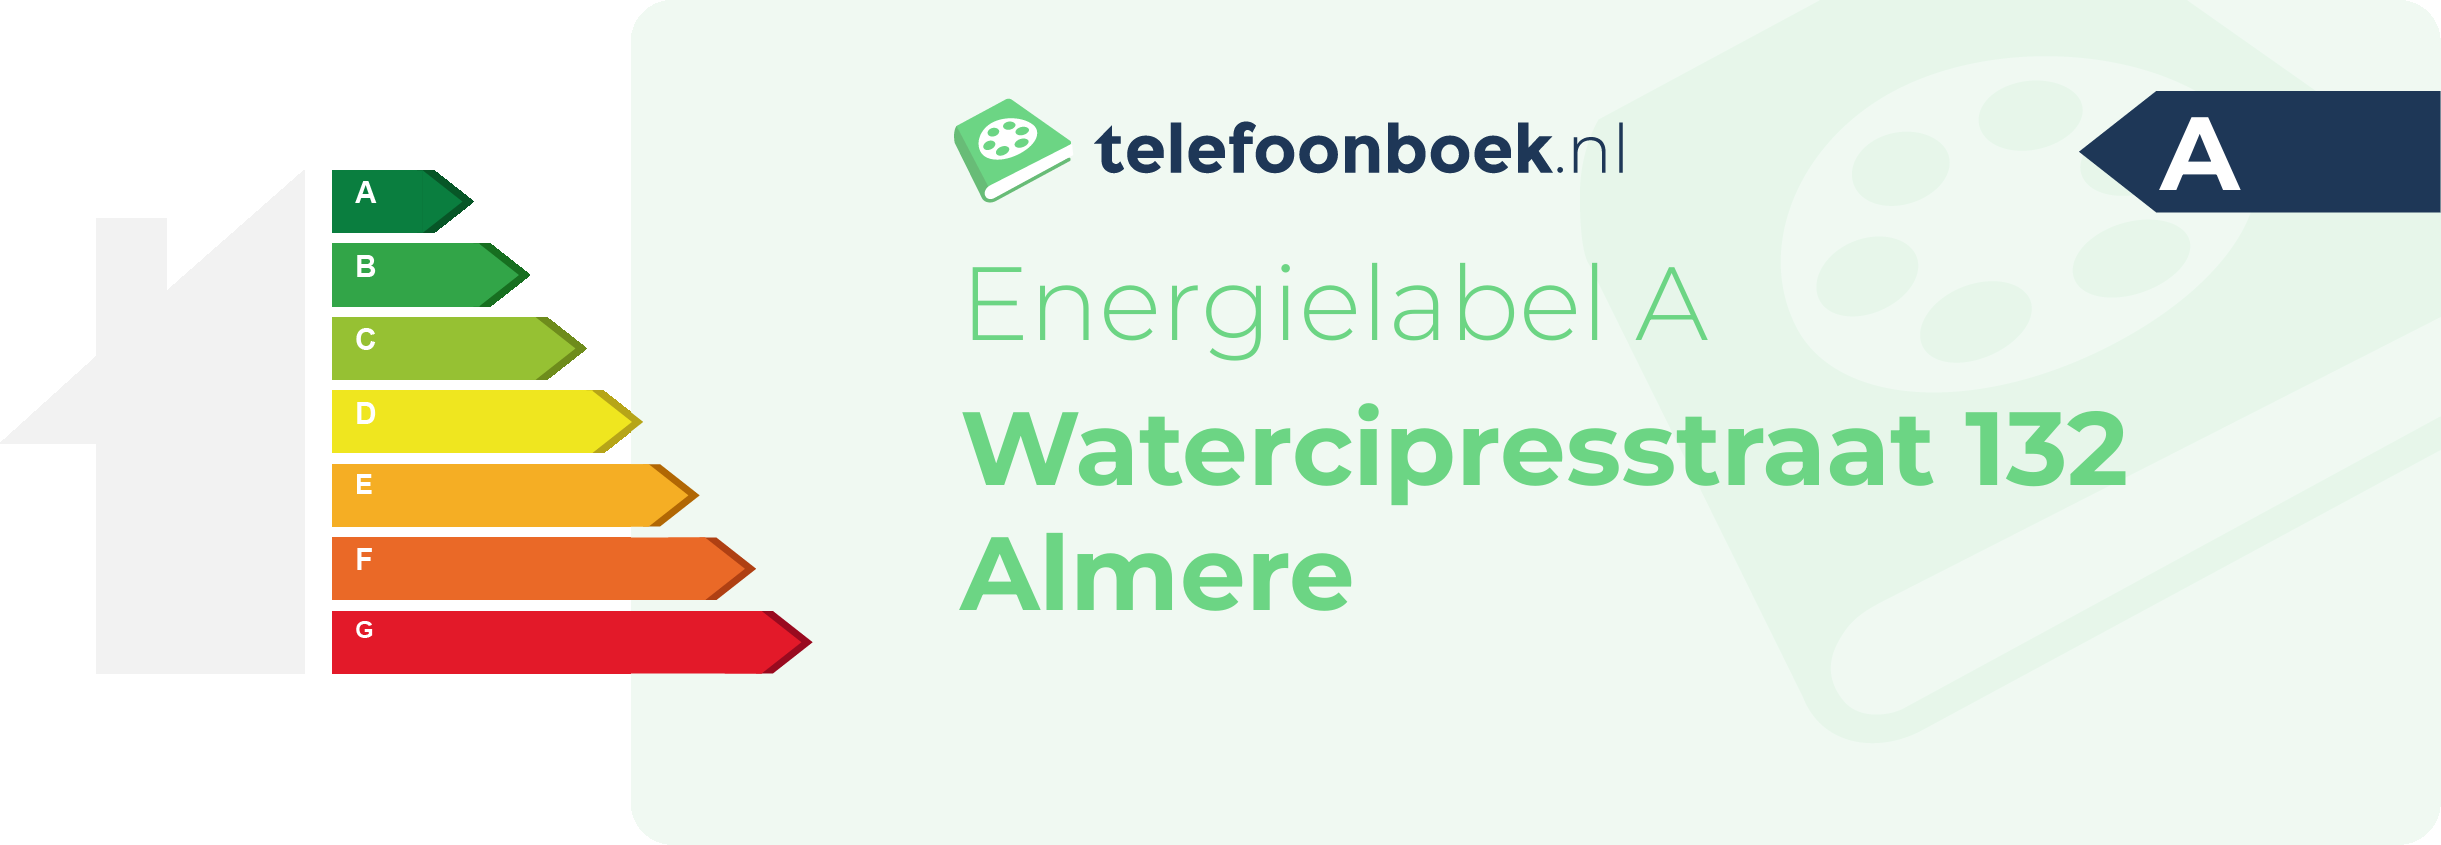 Energielabel Watercipresstraat 132 Almere